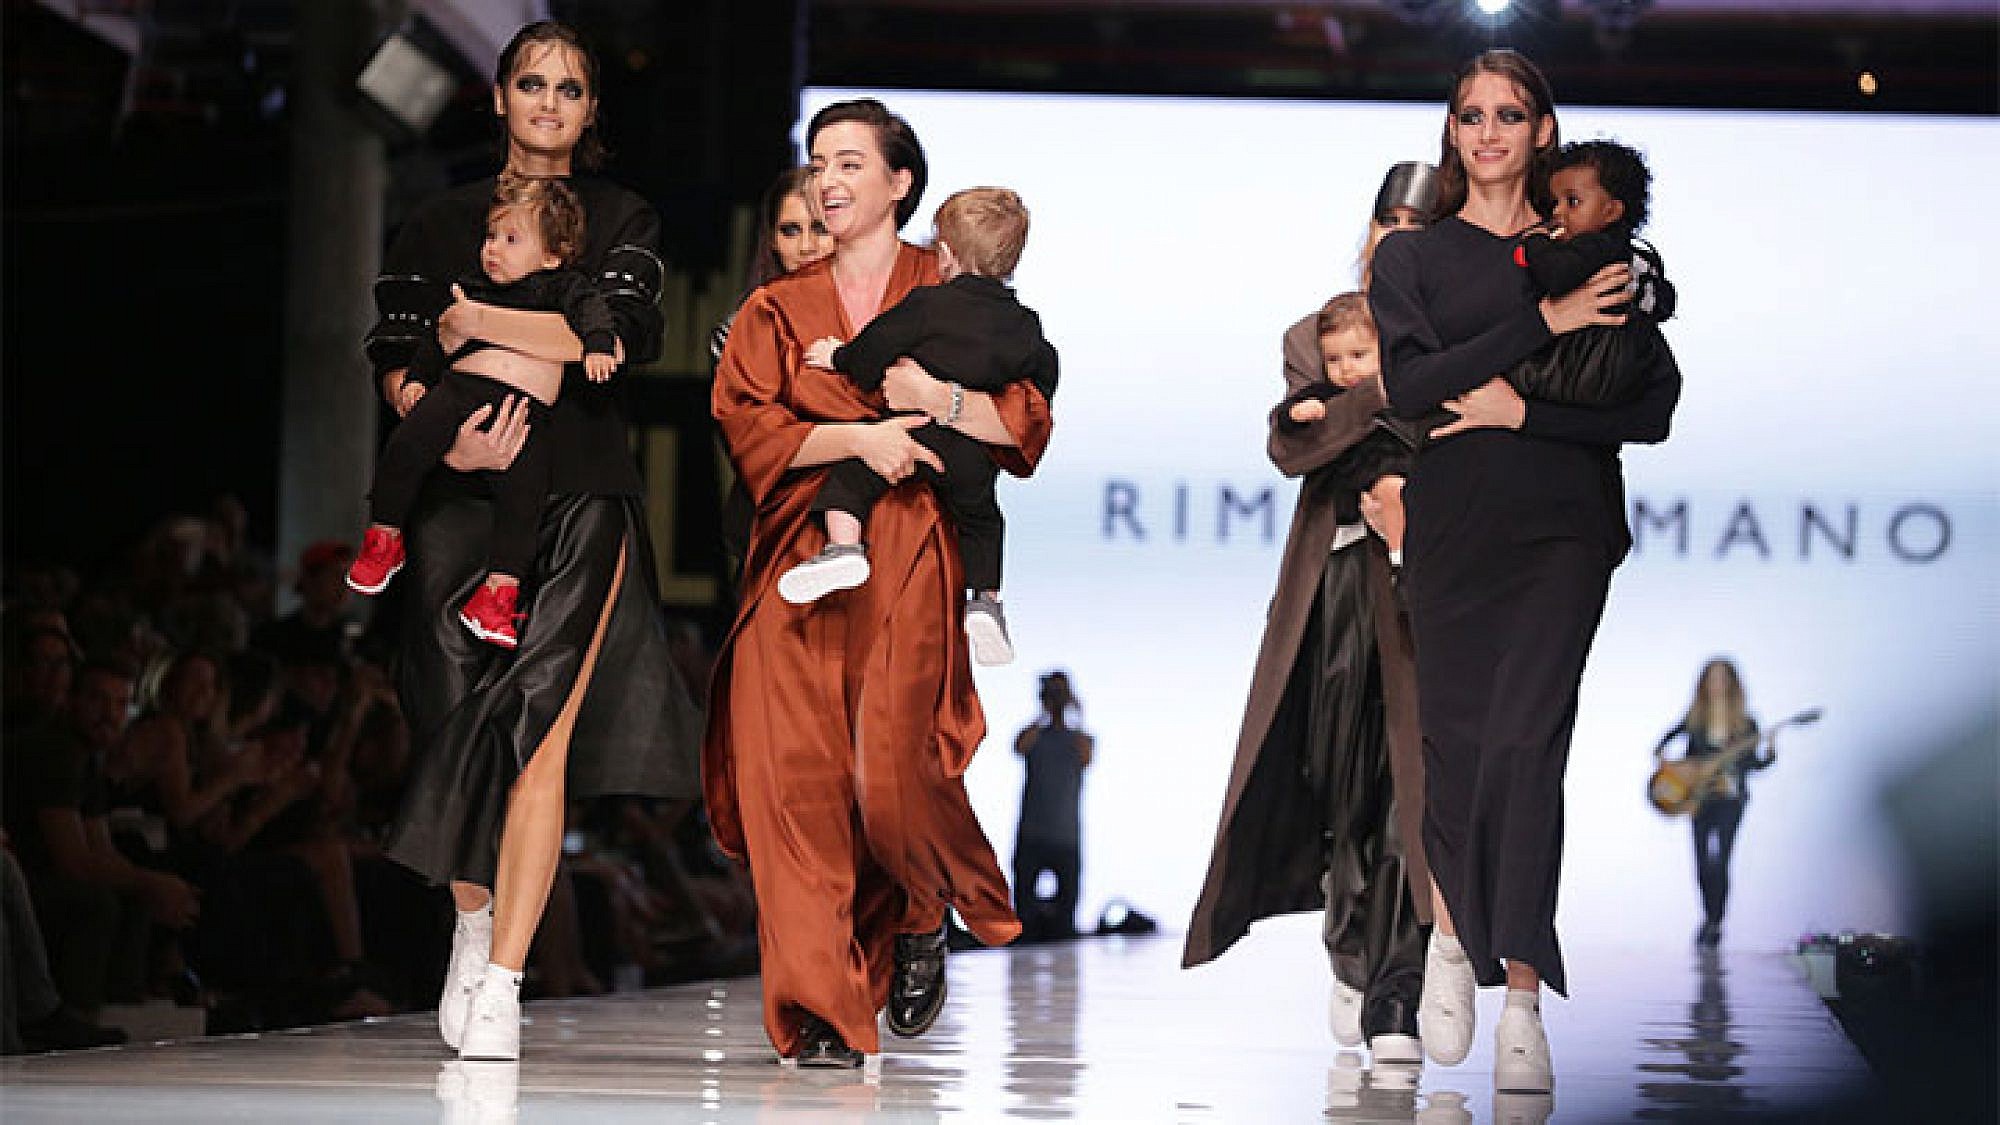 מתוך תצוגת האופנה של רימה רומנו, שבוע האופנה גינדי תל אביב 2015 | צילום: שיר חסין